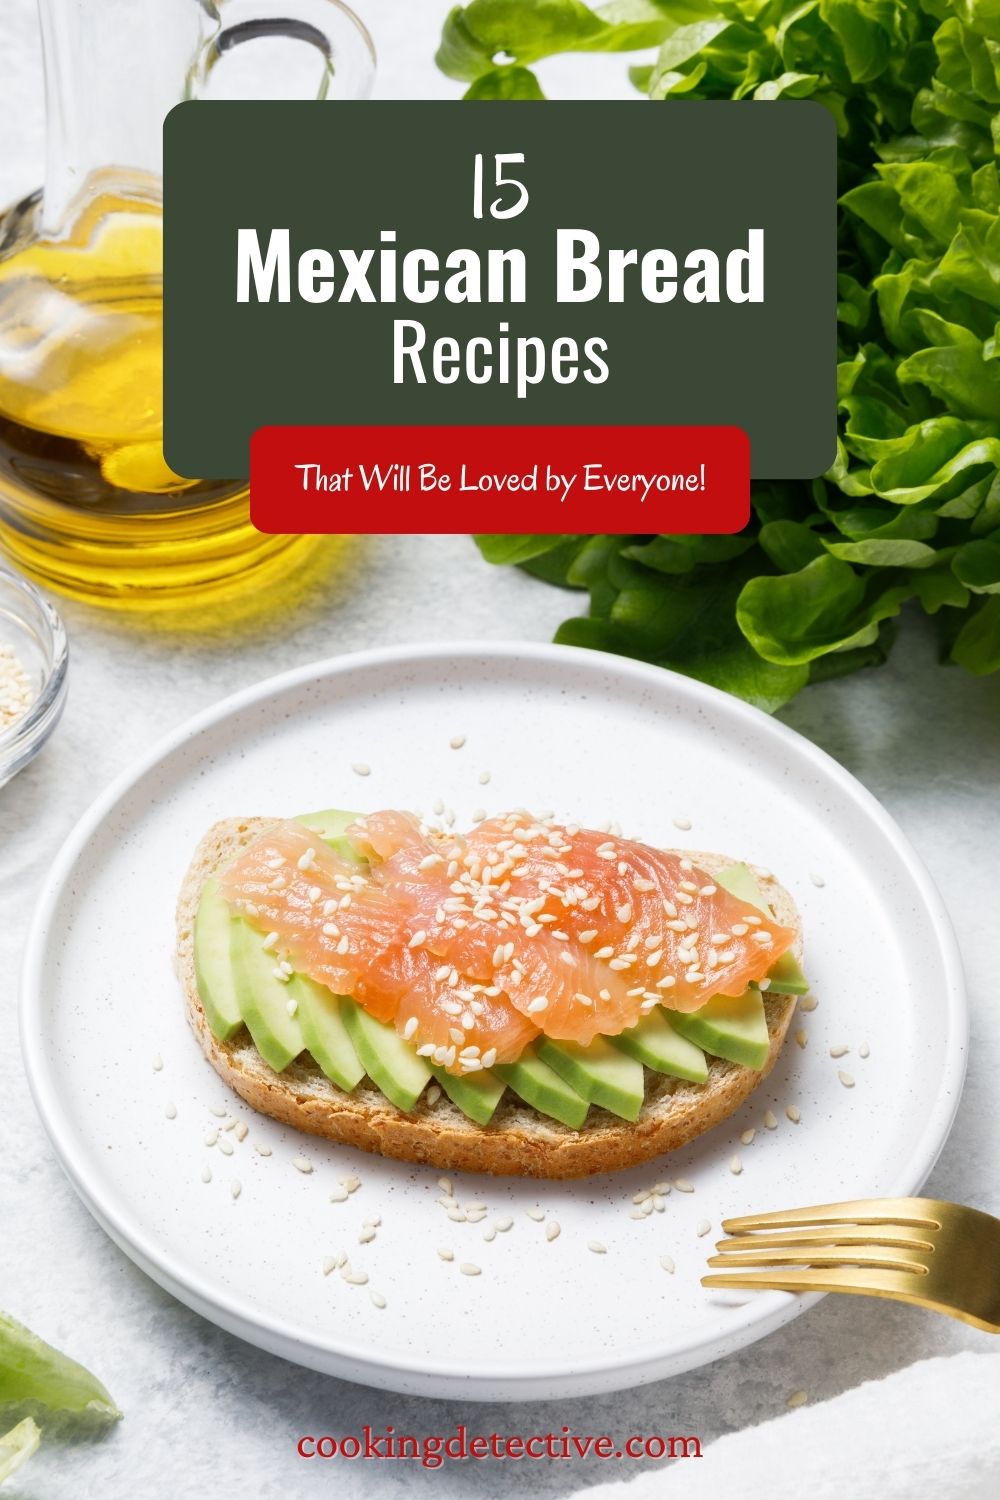 Mexican Bread Recipes